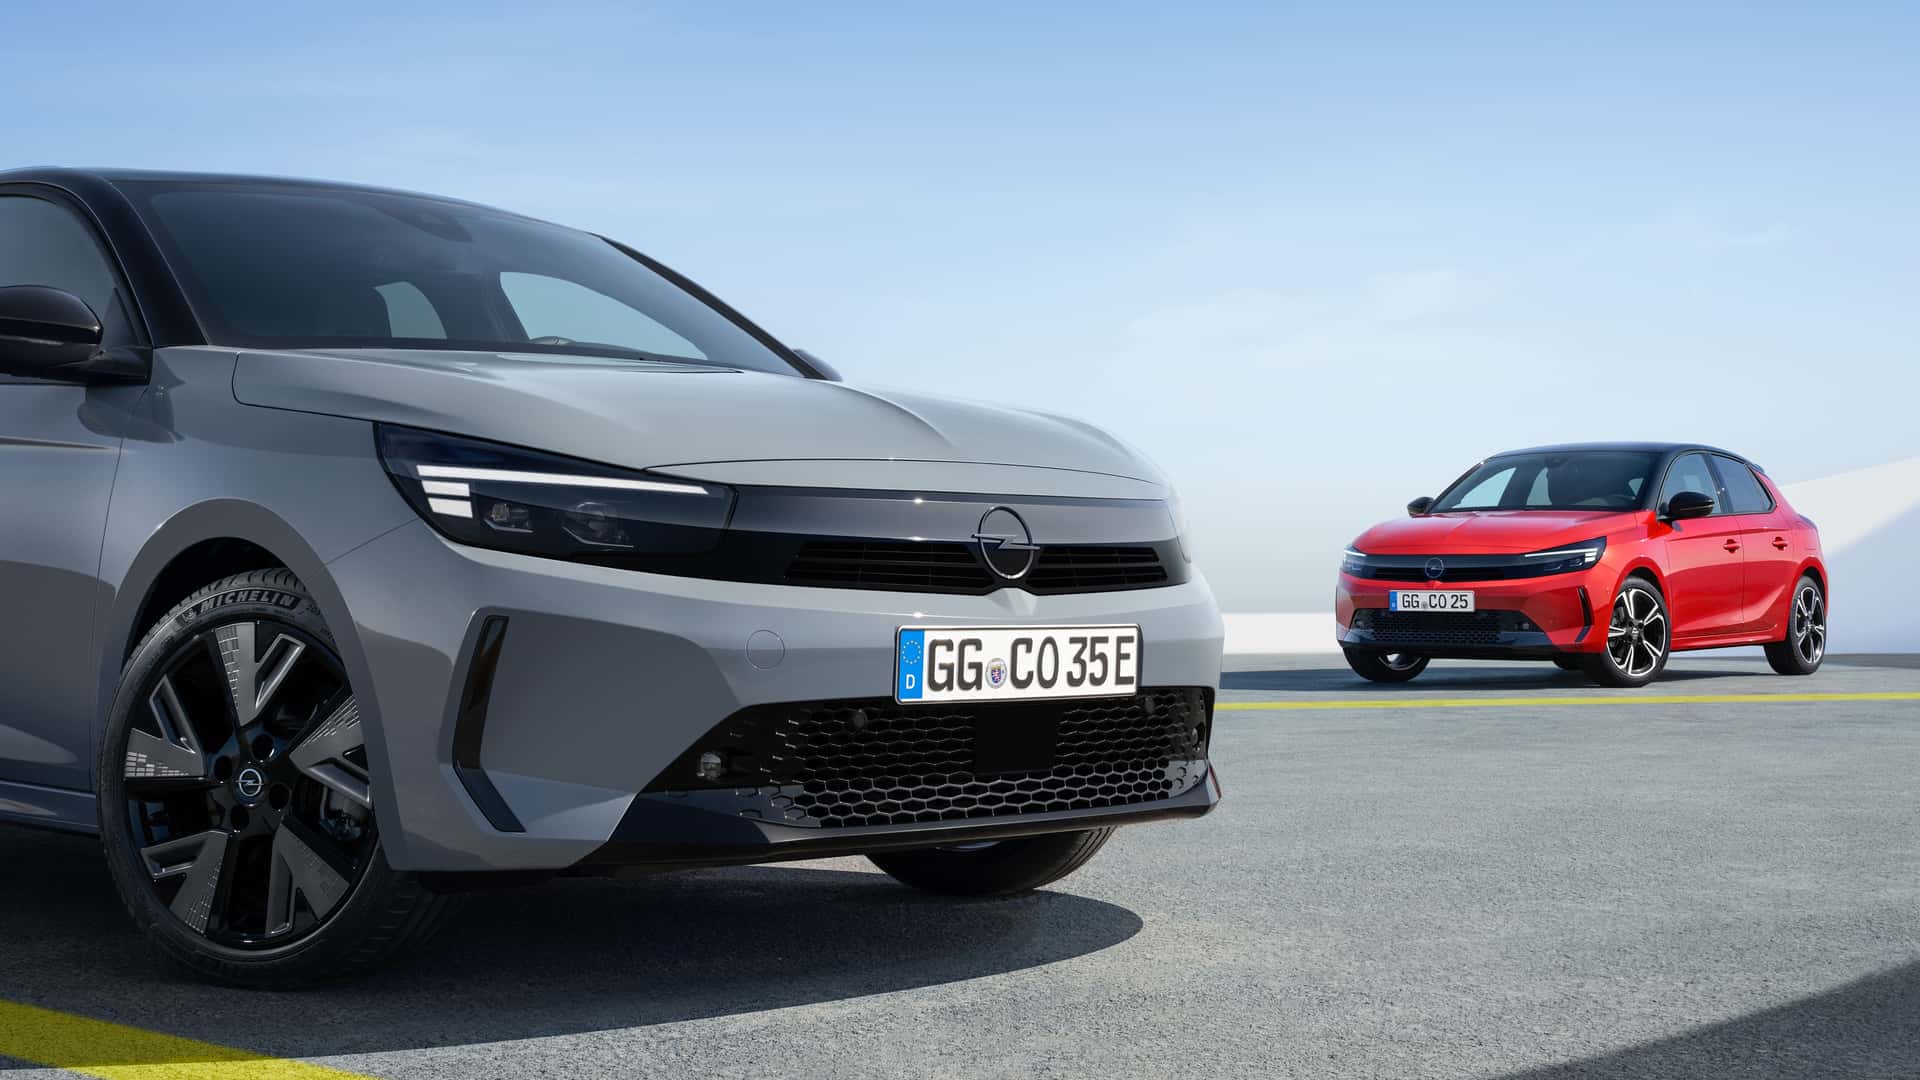 “Agora também com o Vizor”: Opel renova Corsa e aumenta a eletrificação